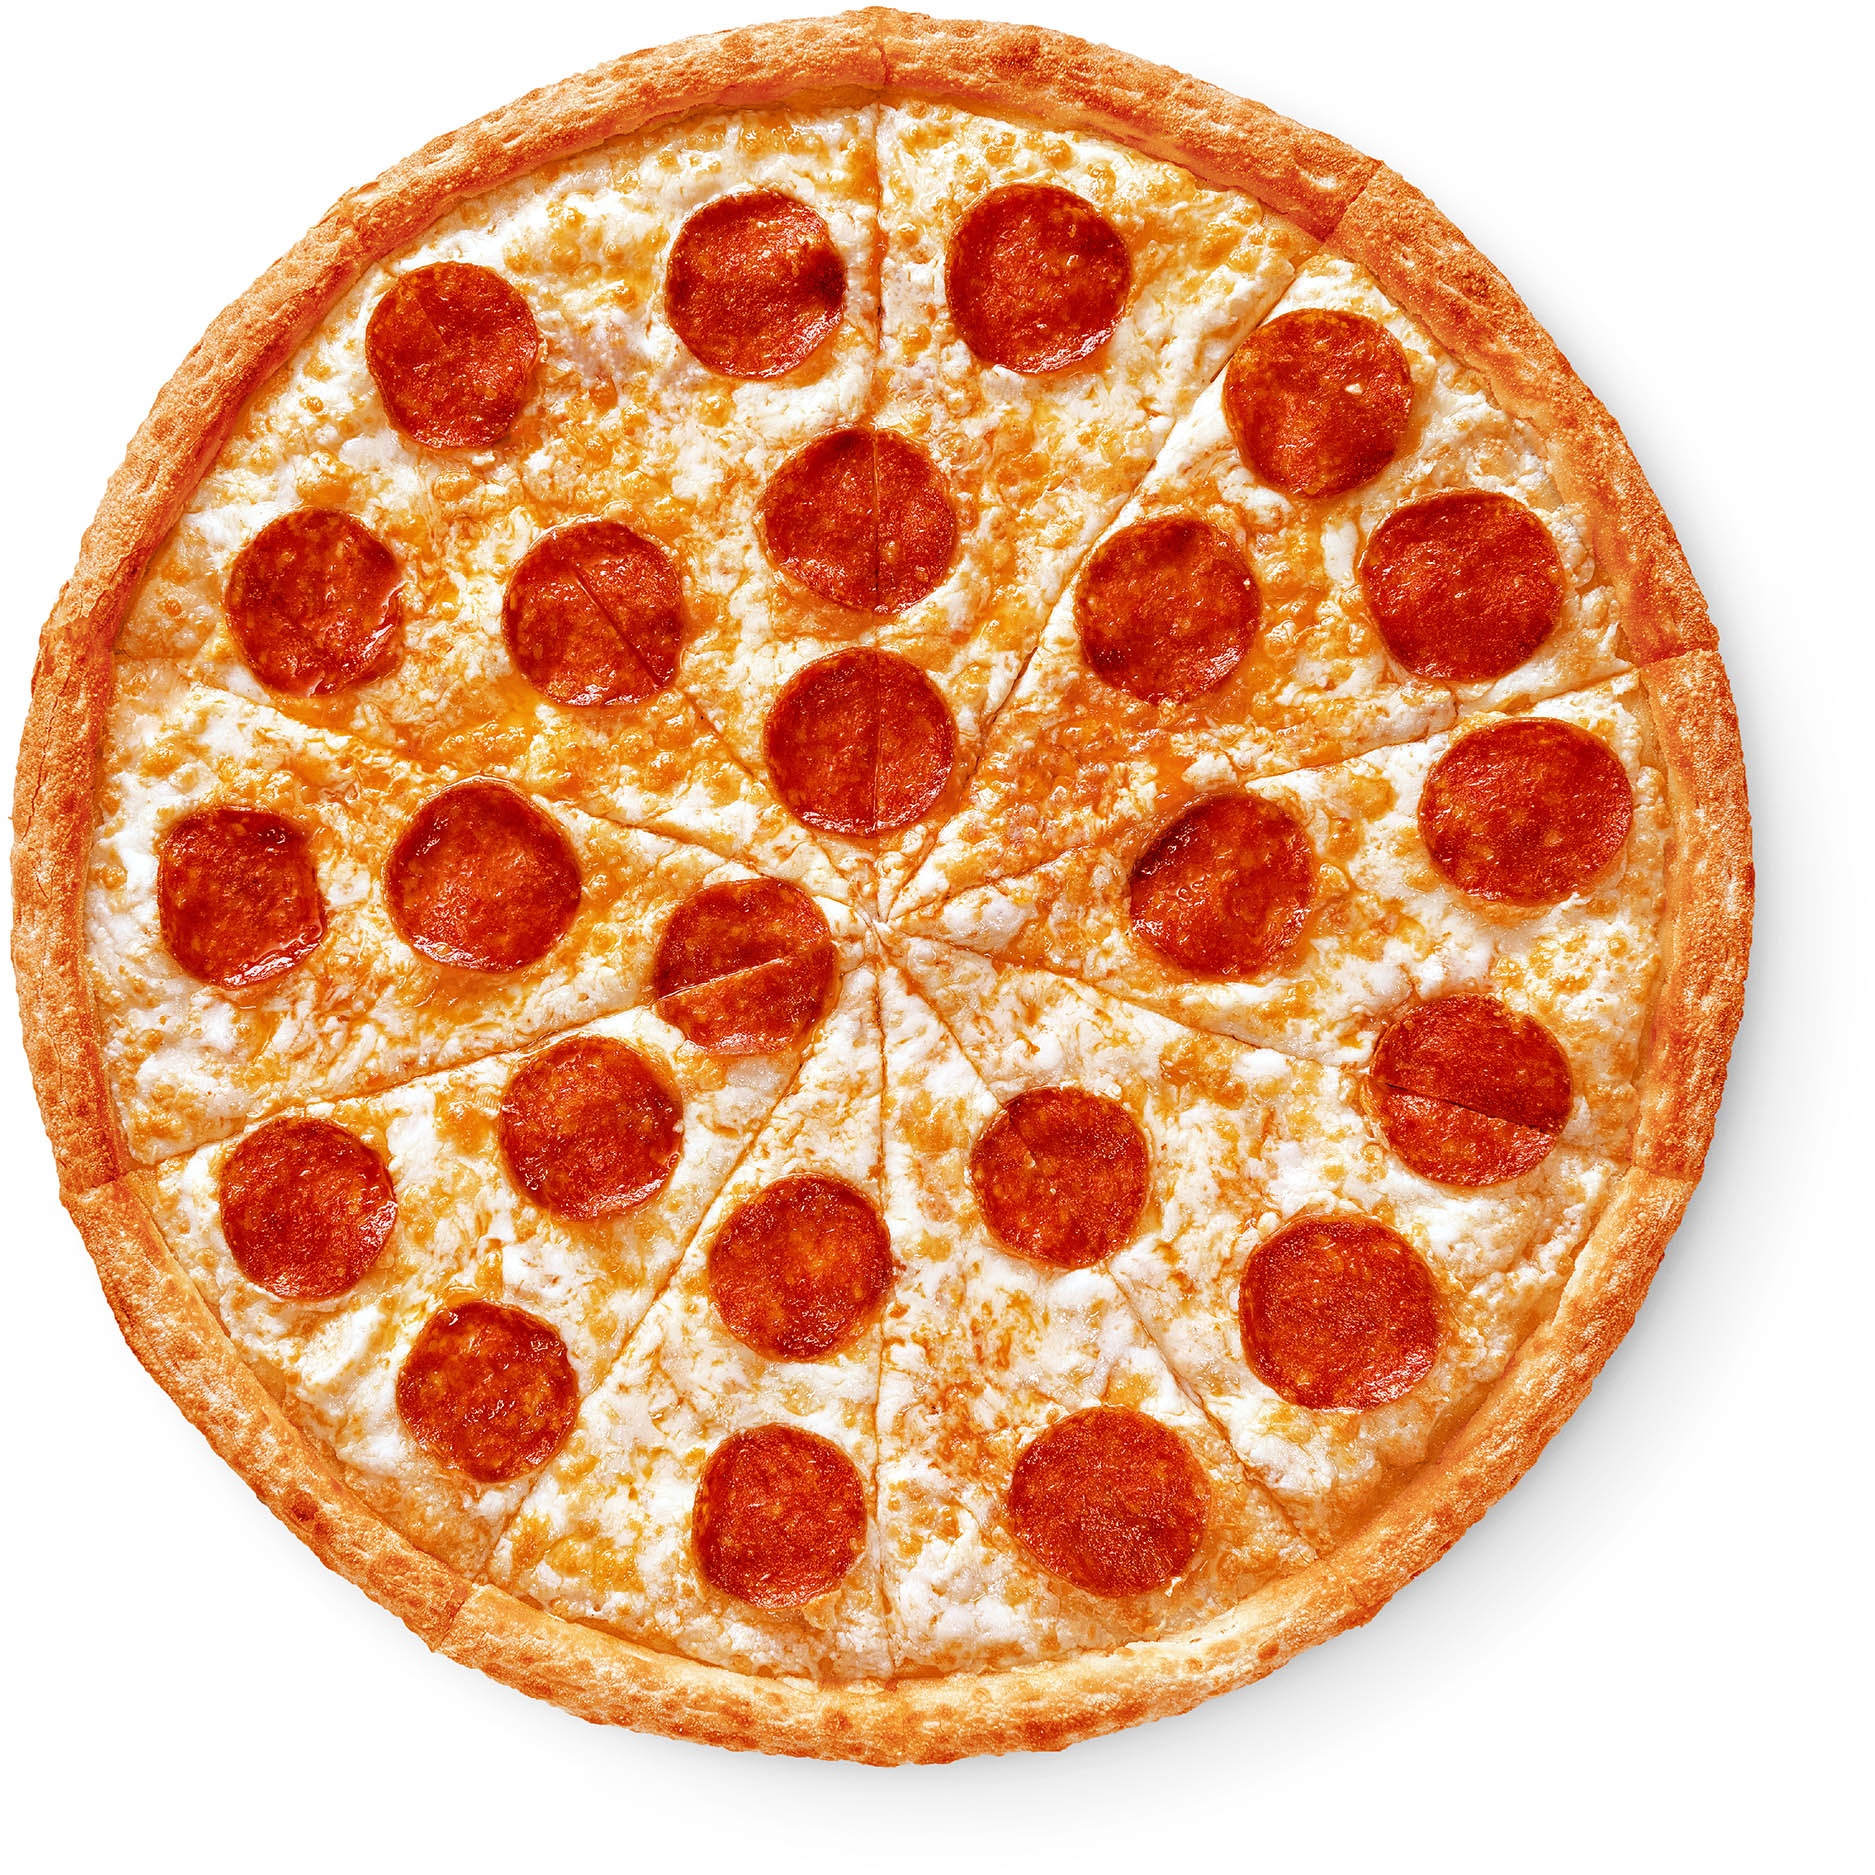 сколько стоит большая пицца пепперони в додо пицце фото 4